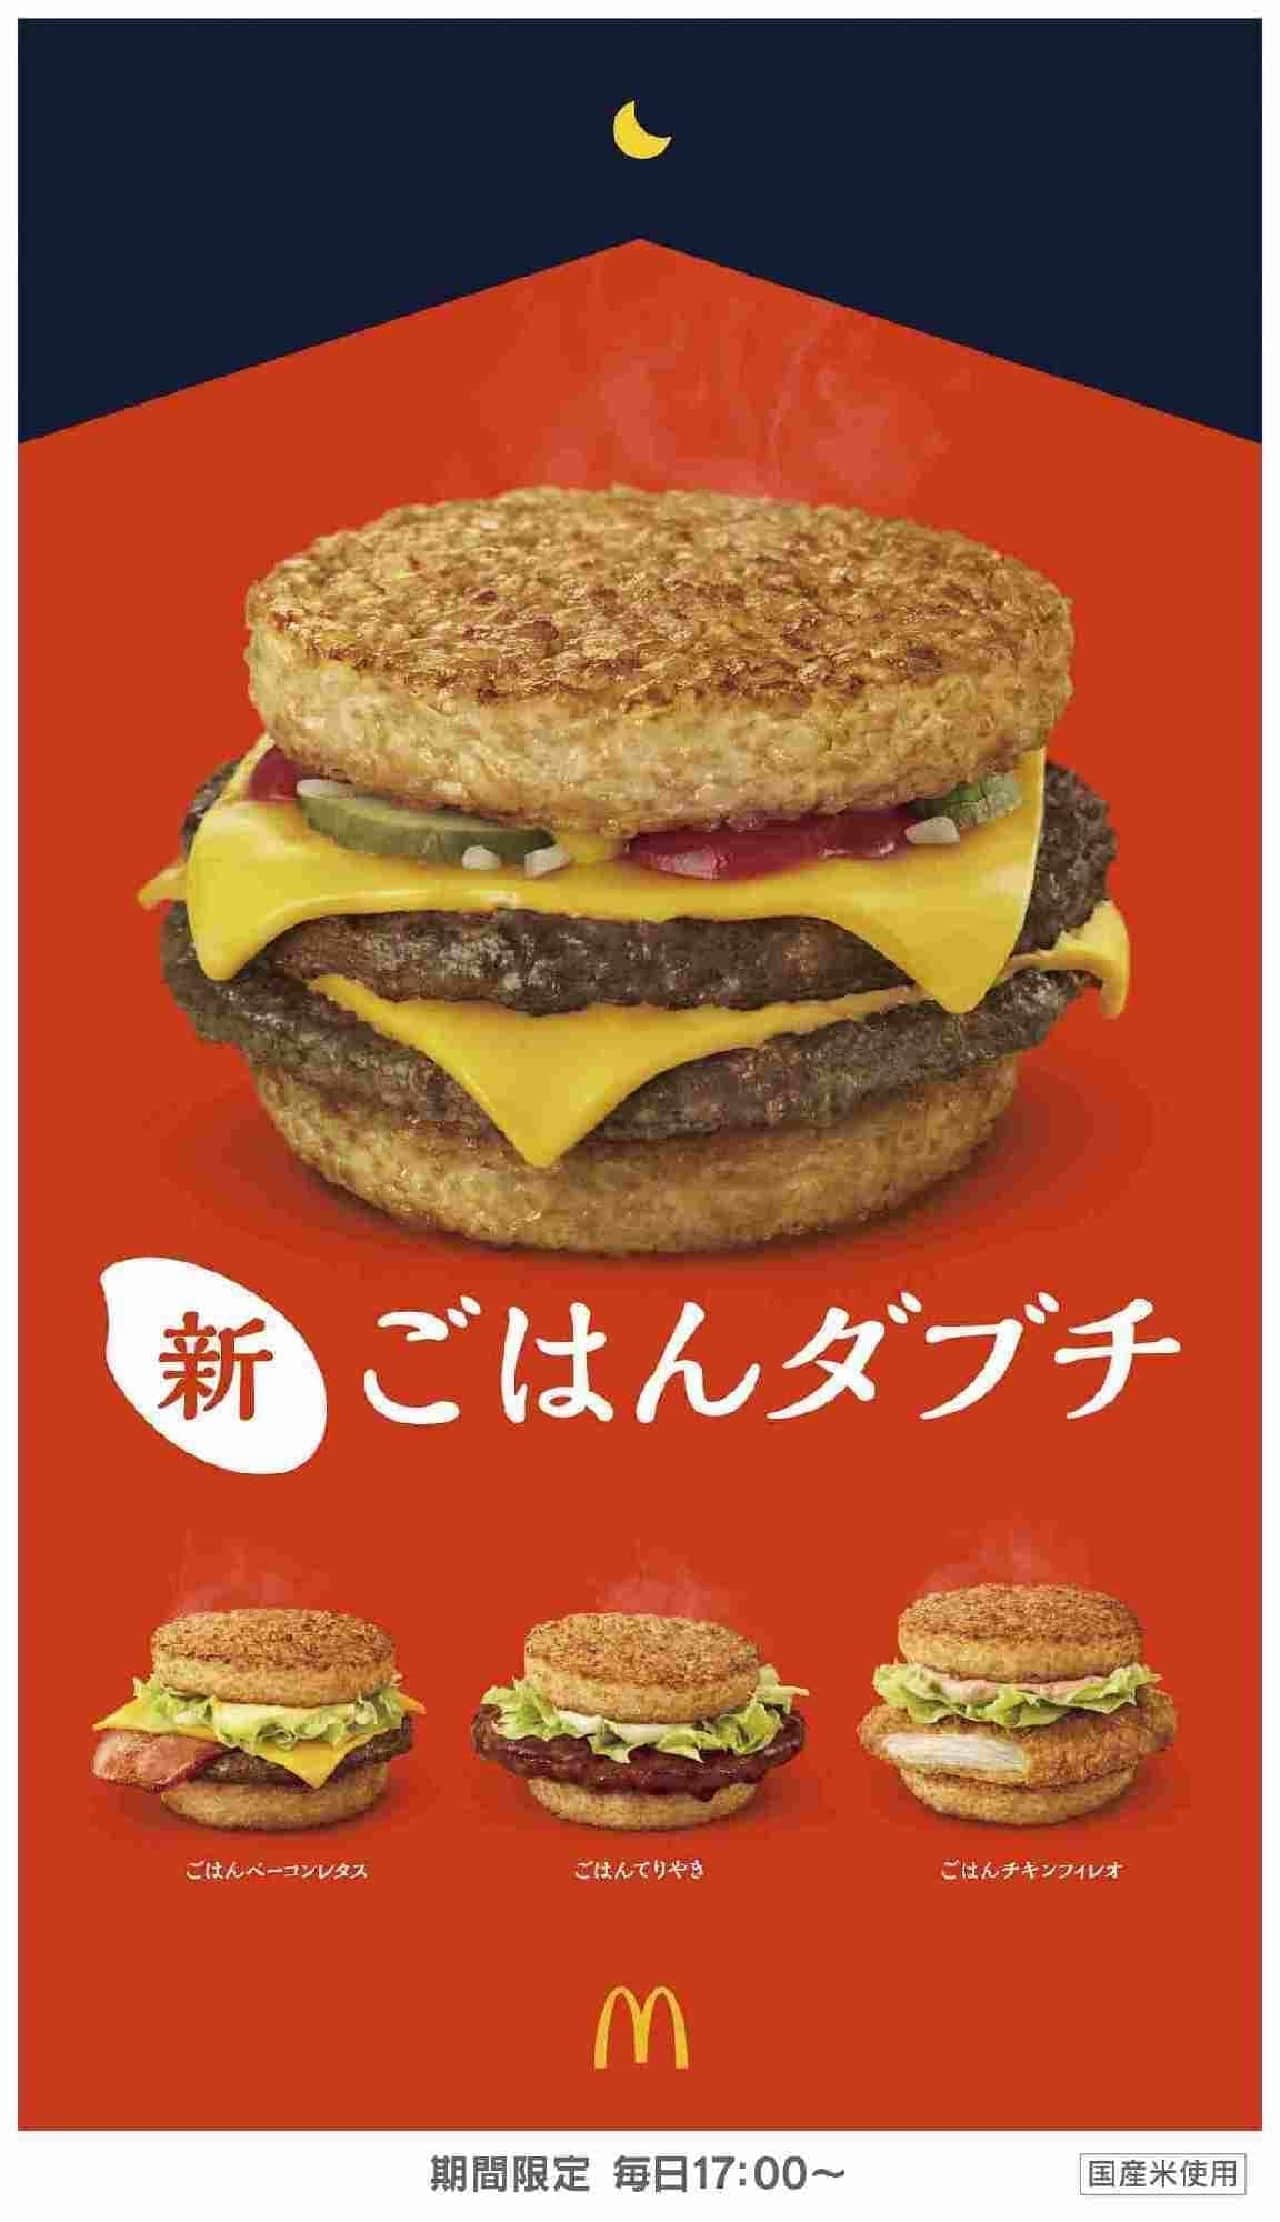 McDonald's "Rice Dabuchi"